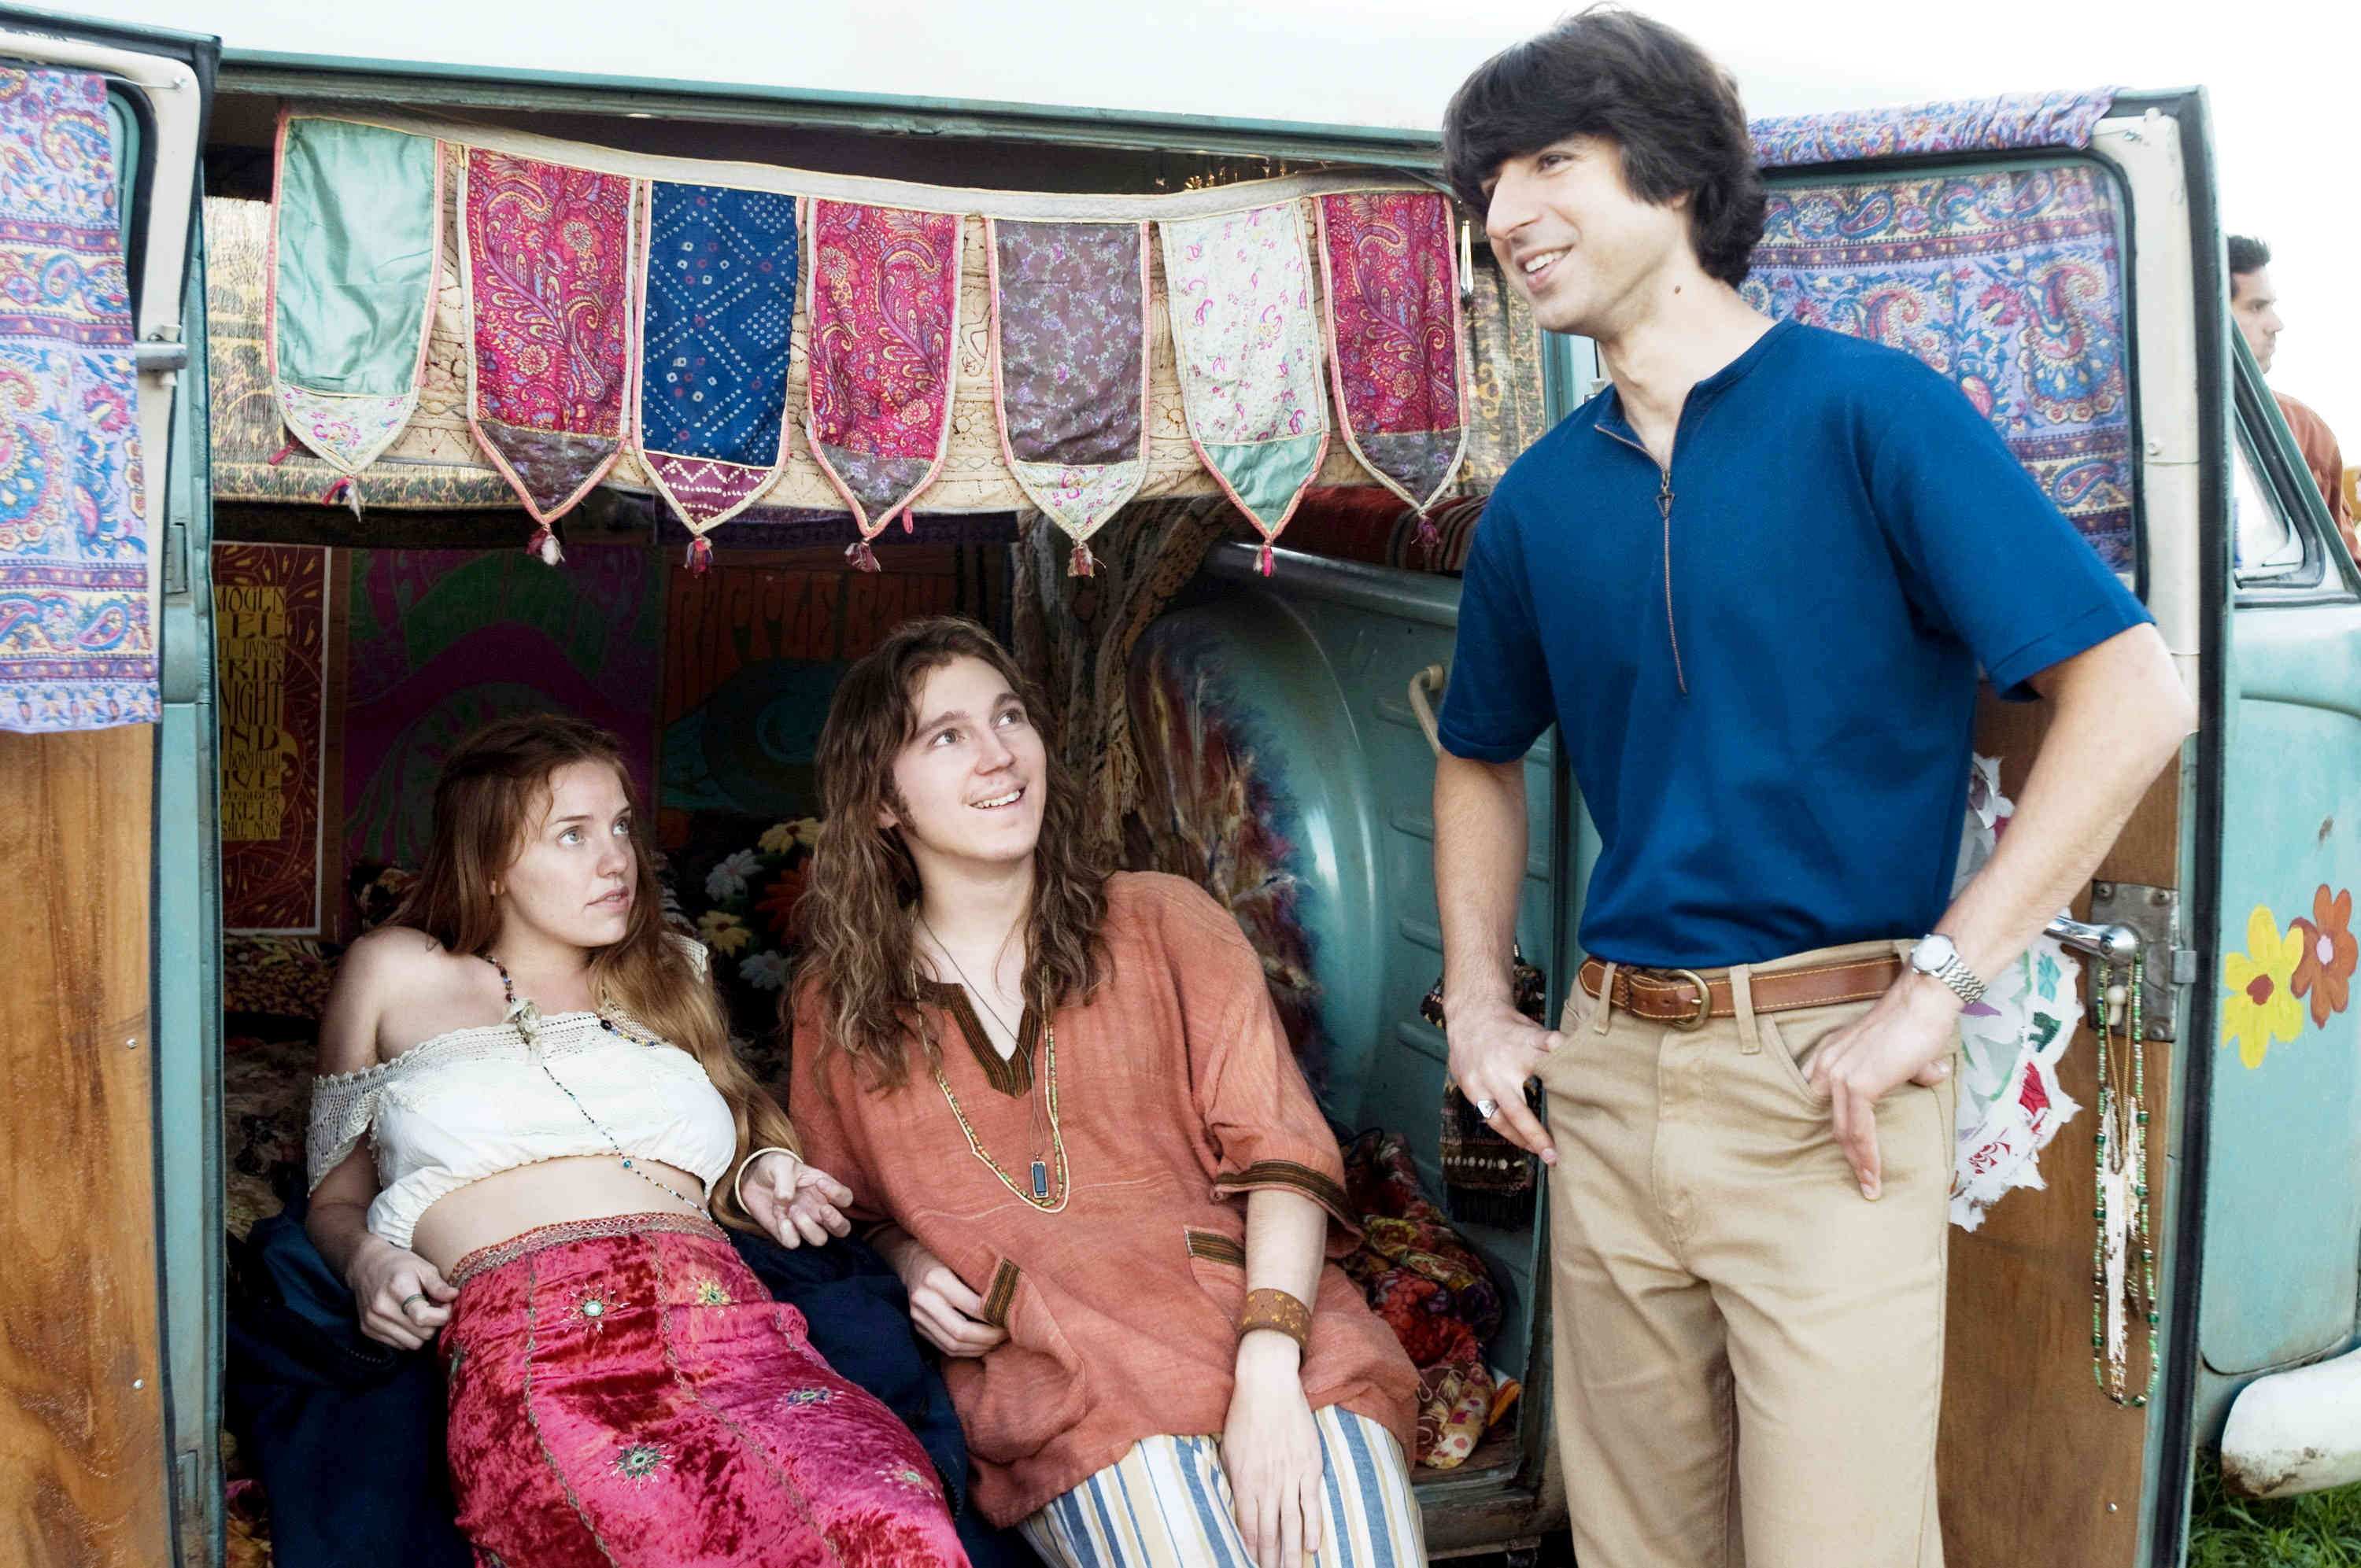 Kelli Garner, Paul Dano and Demetri Martin in Focus Features' Taking Woodstock (2009)